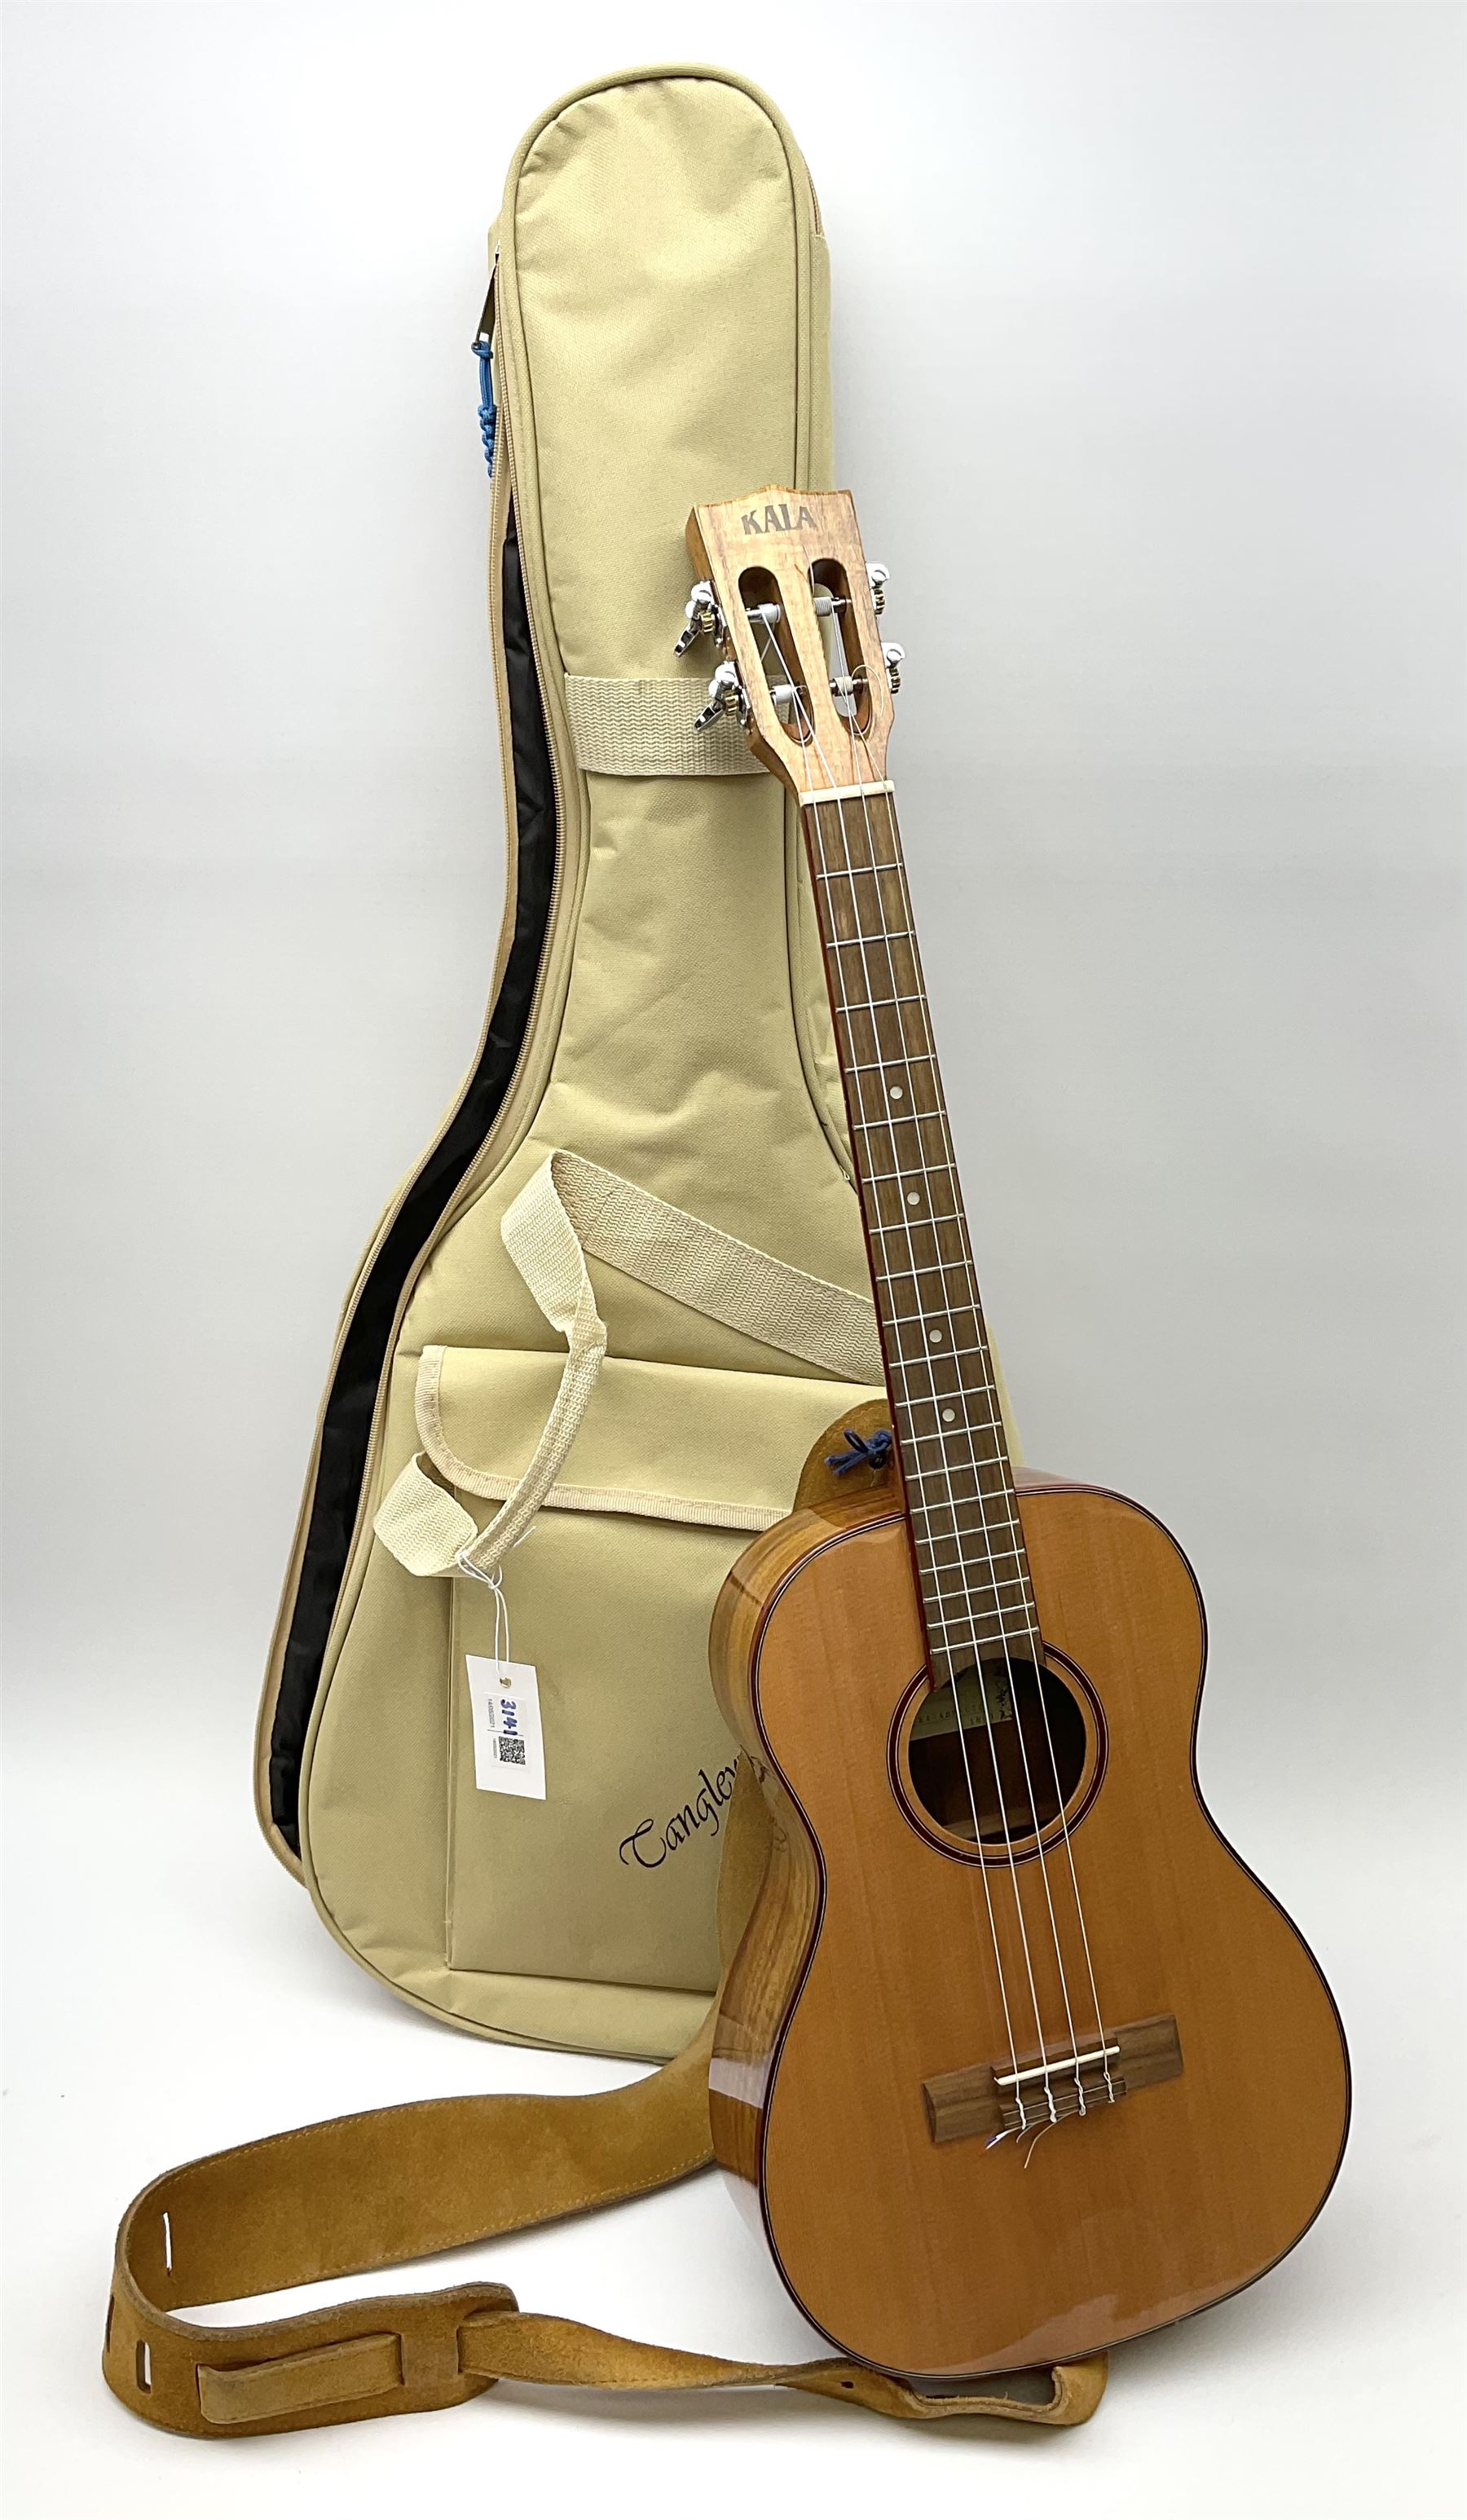 Modern Kala ukulele with acacia back and sides